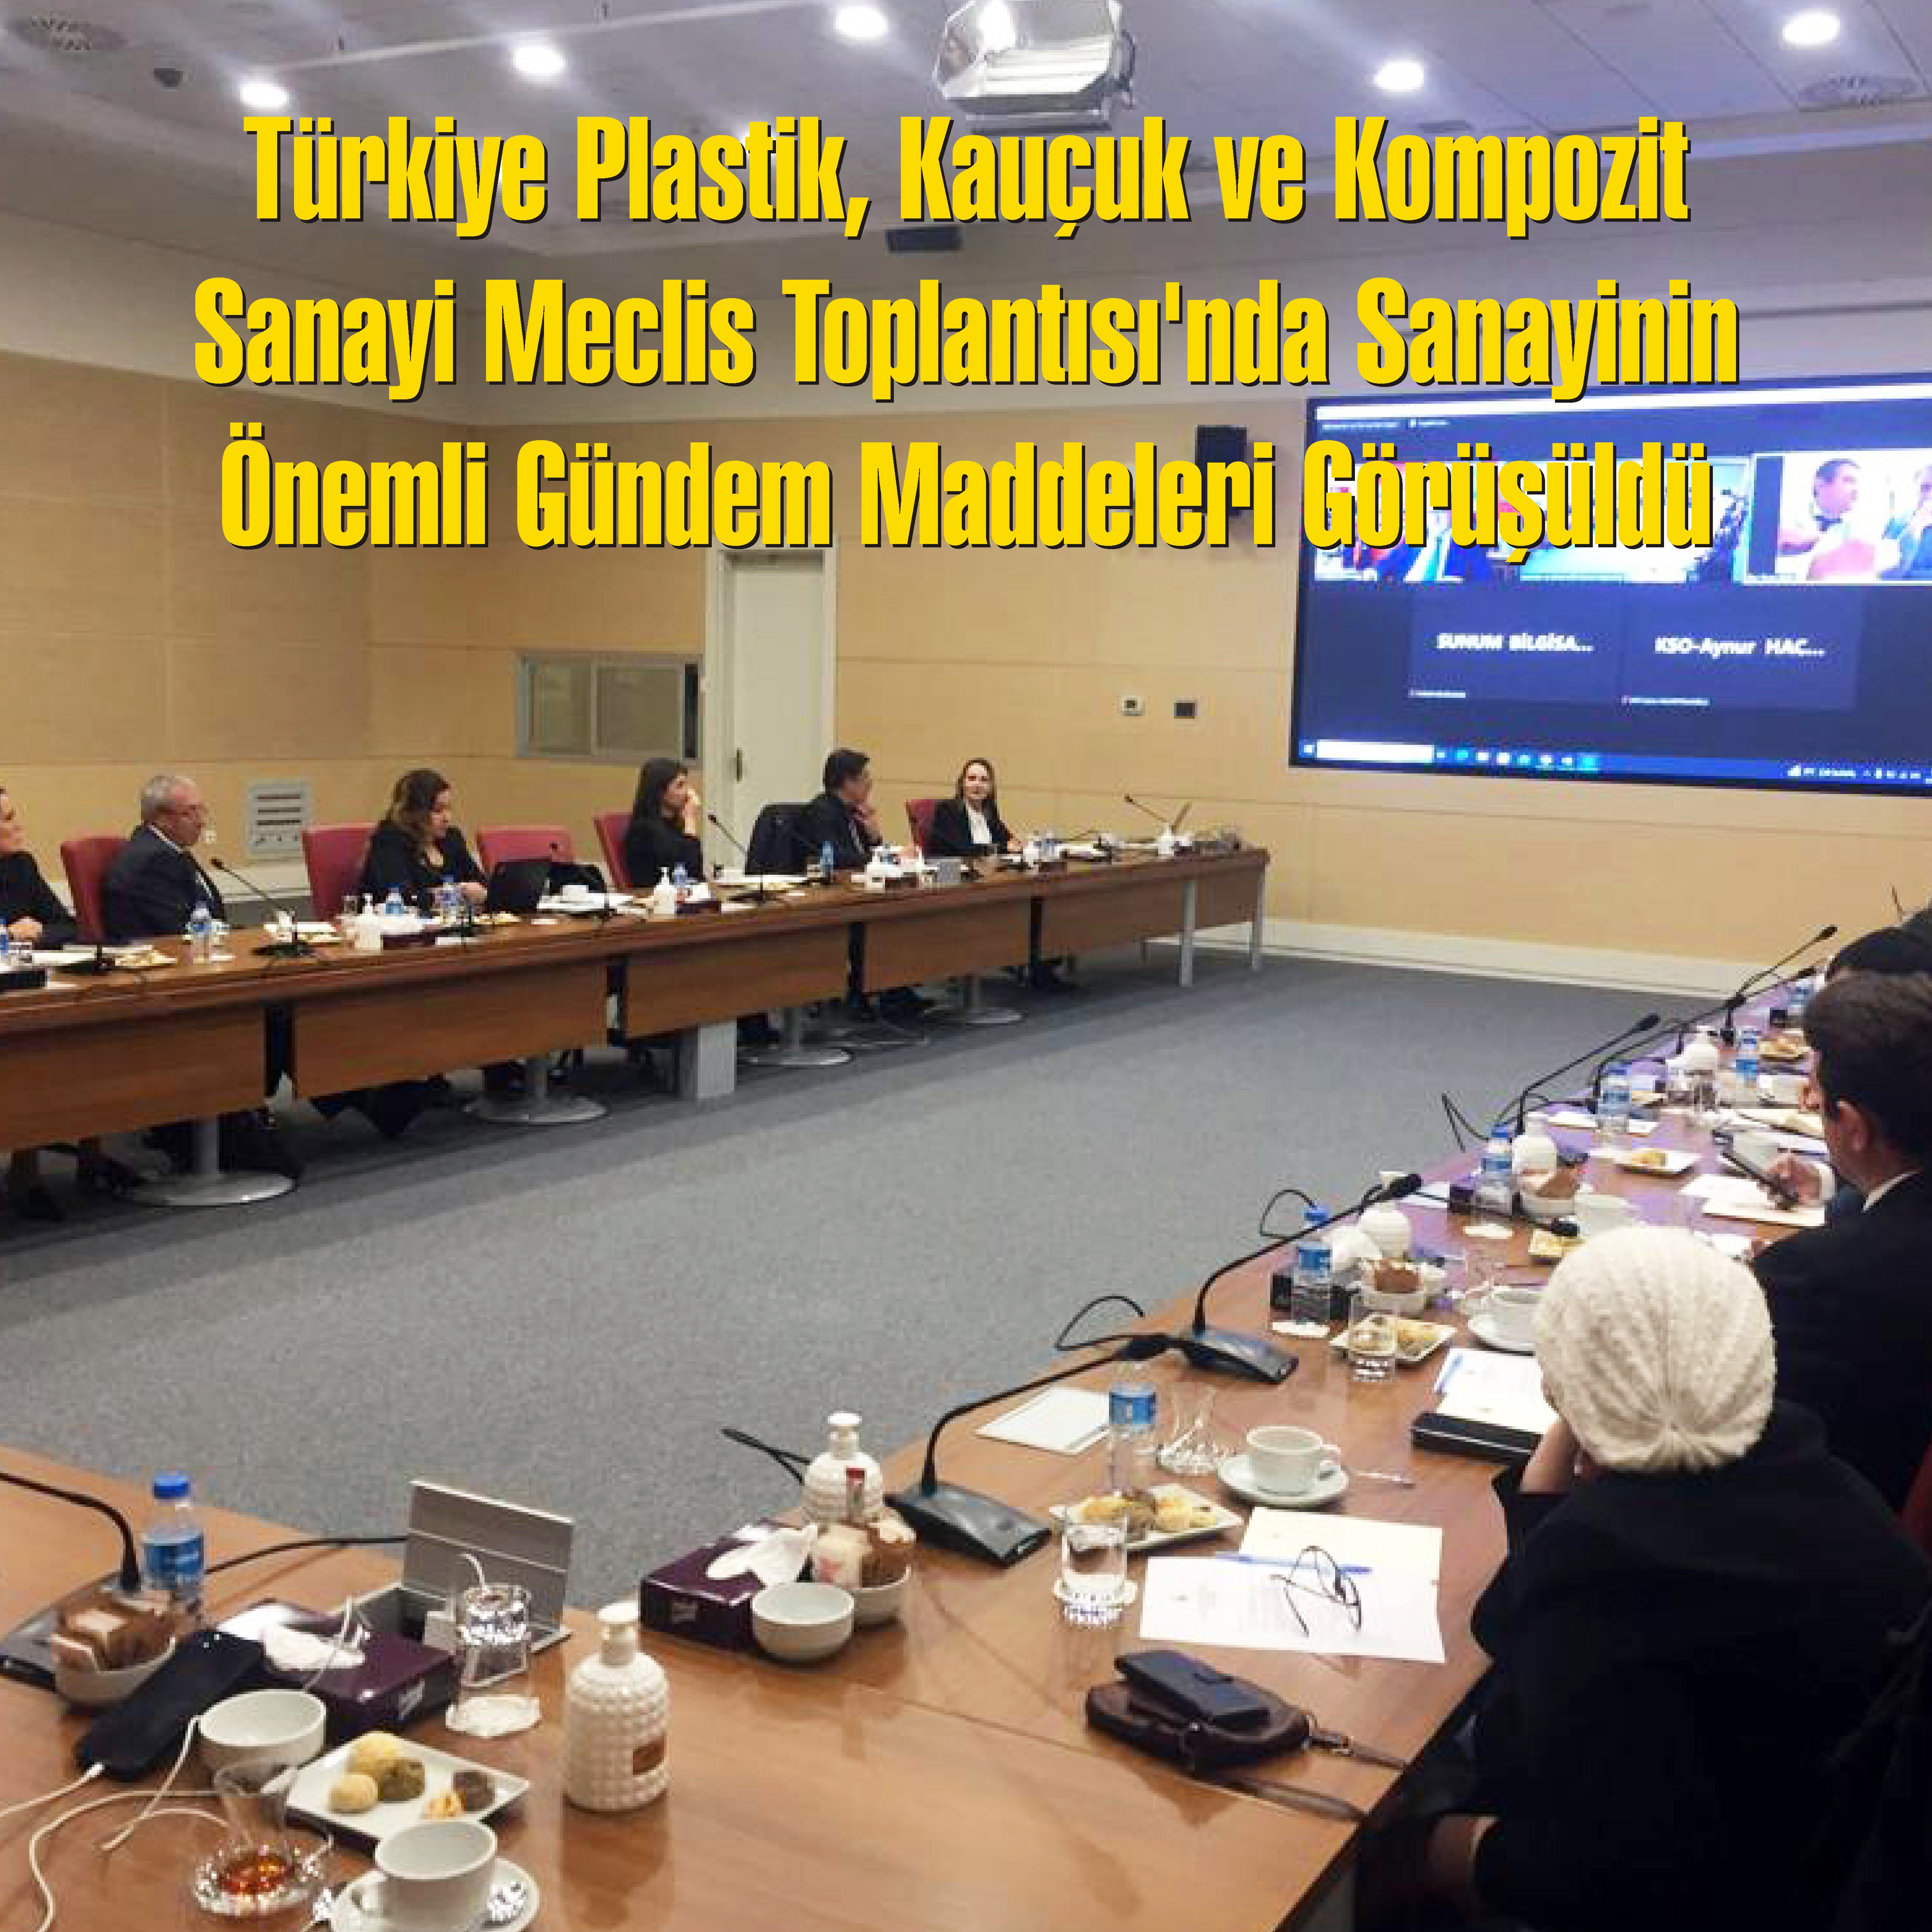 Türkiye Plastik, Kauçuk ve Kompozit Sanayi Meclis Toplantısı’nda Sanayinin Önemli Gündem Maddeleri Görüşüldü